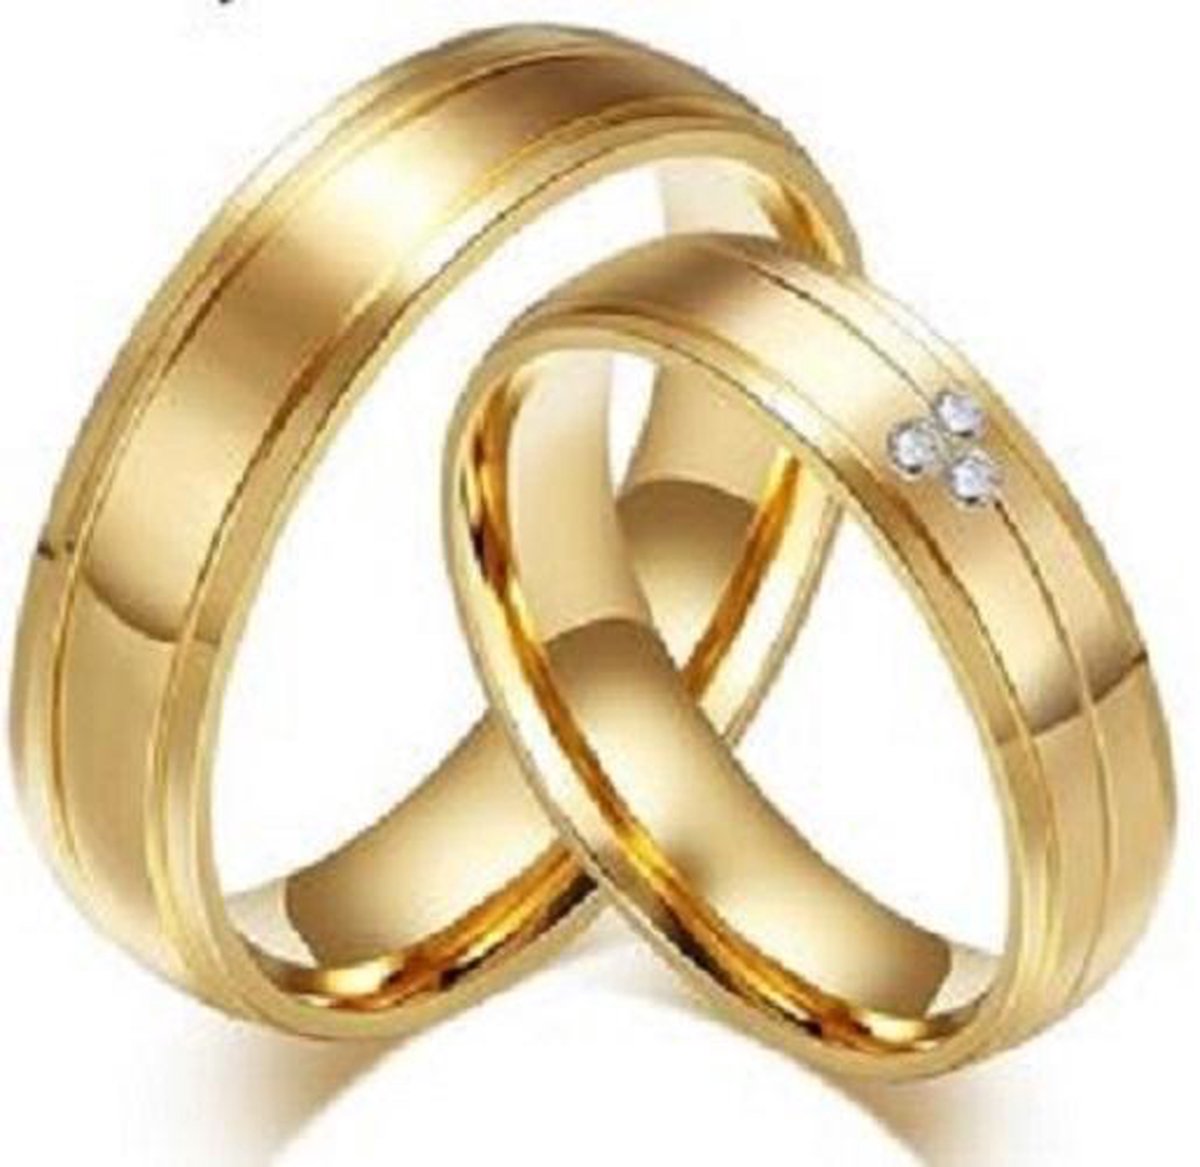 Jonline Prachtige Ringen voor hem en haar|Trouwringen|Vriendschapsringen|Relatieringen|Set Ringen - Jonline